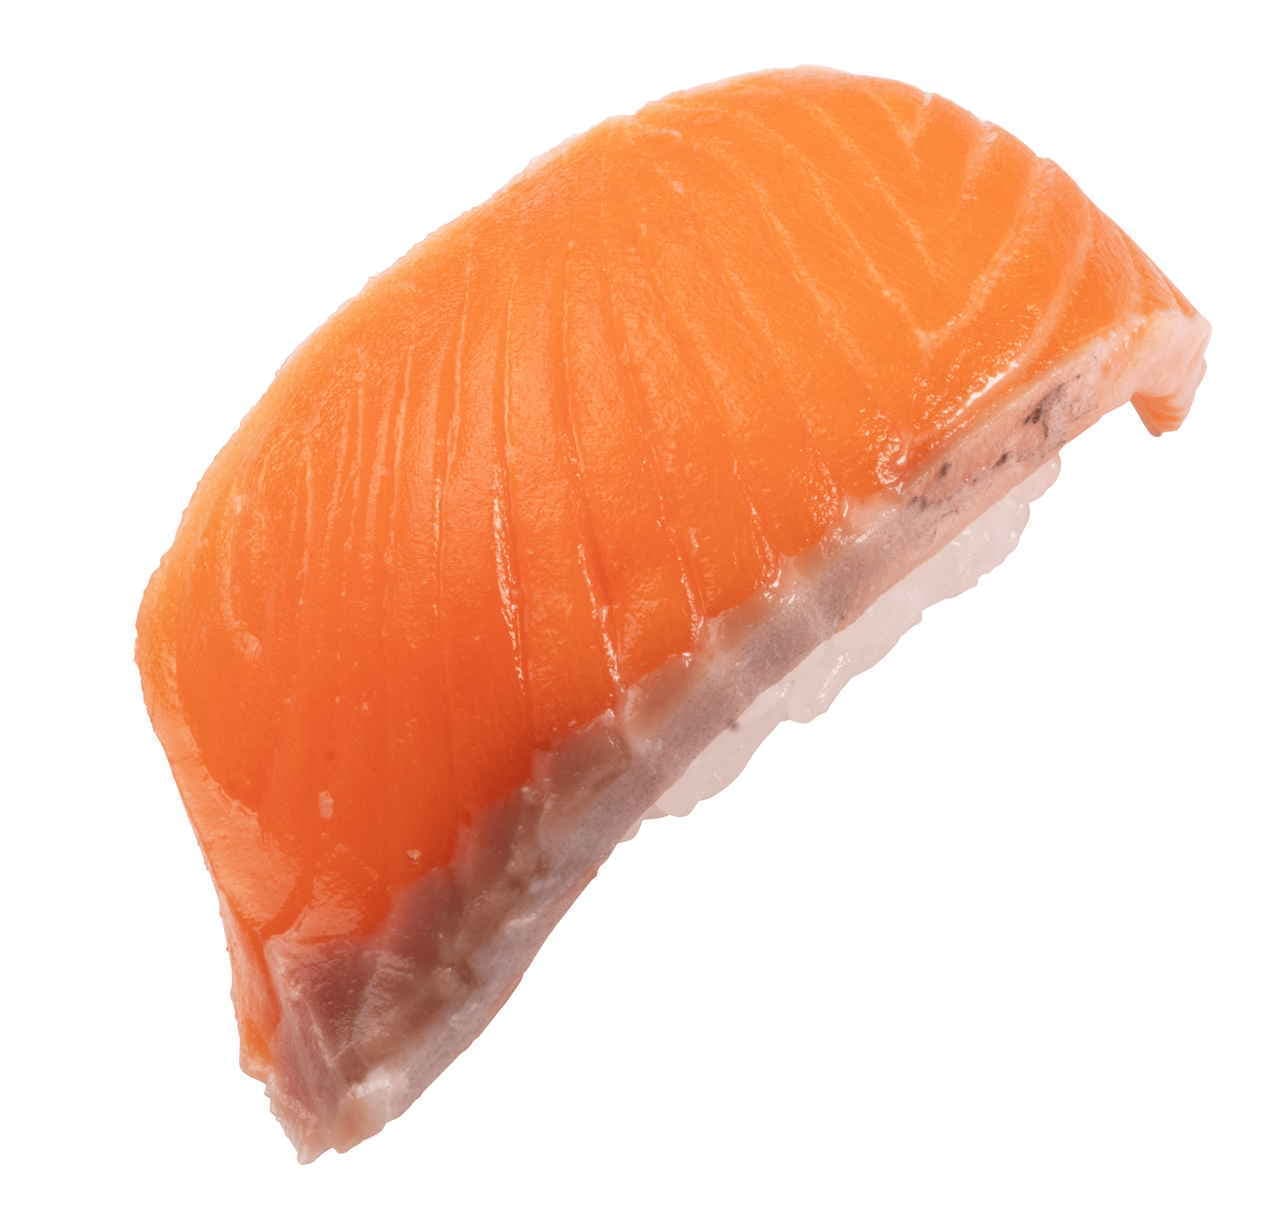 Kappa Sushi "Natural Minami Tuna" and "King Salmon" Fair